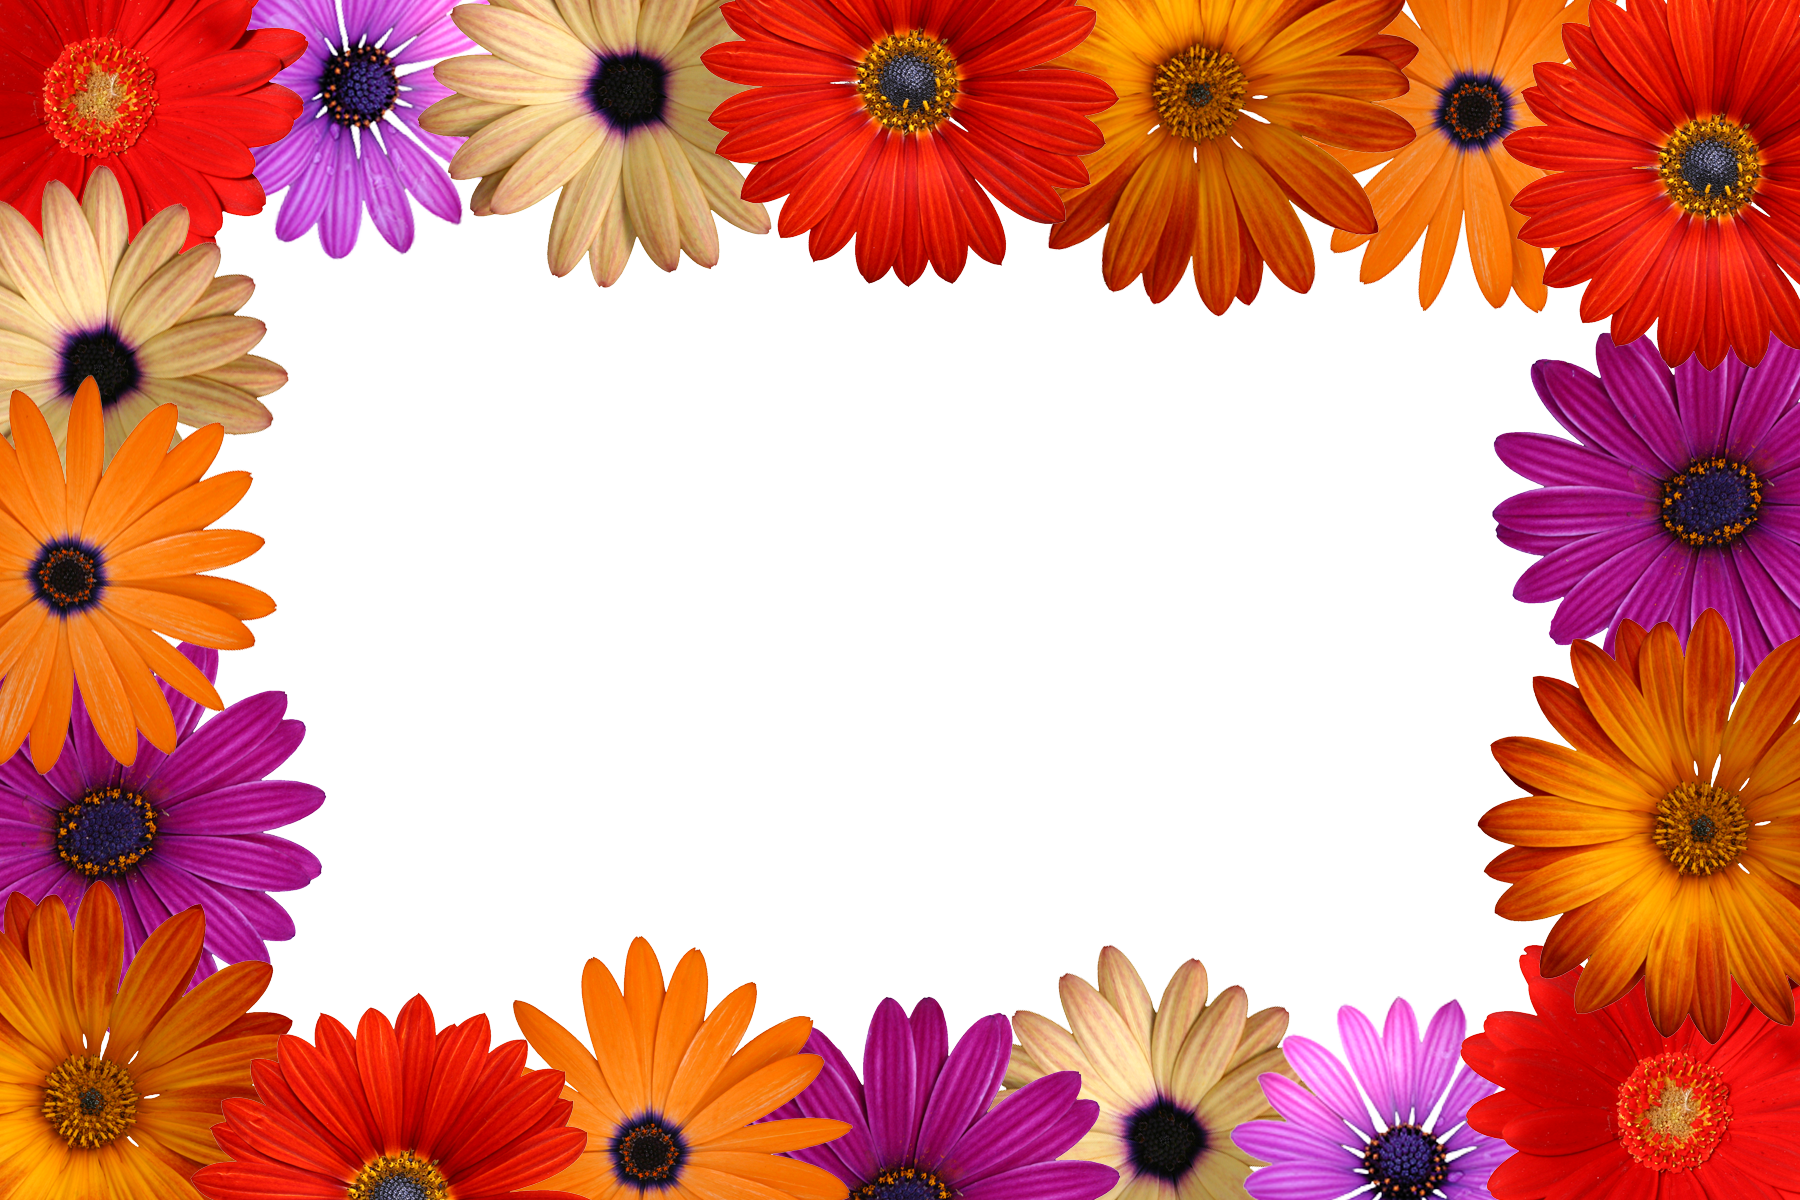 Sample Files - Flower Frameimages (1800x1200)